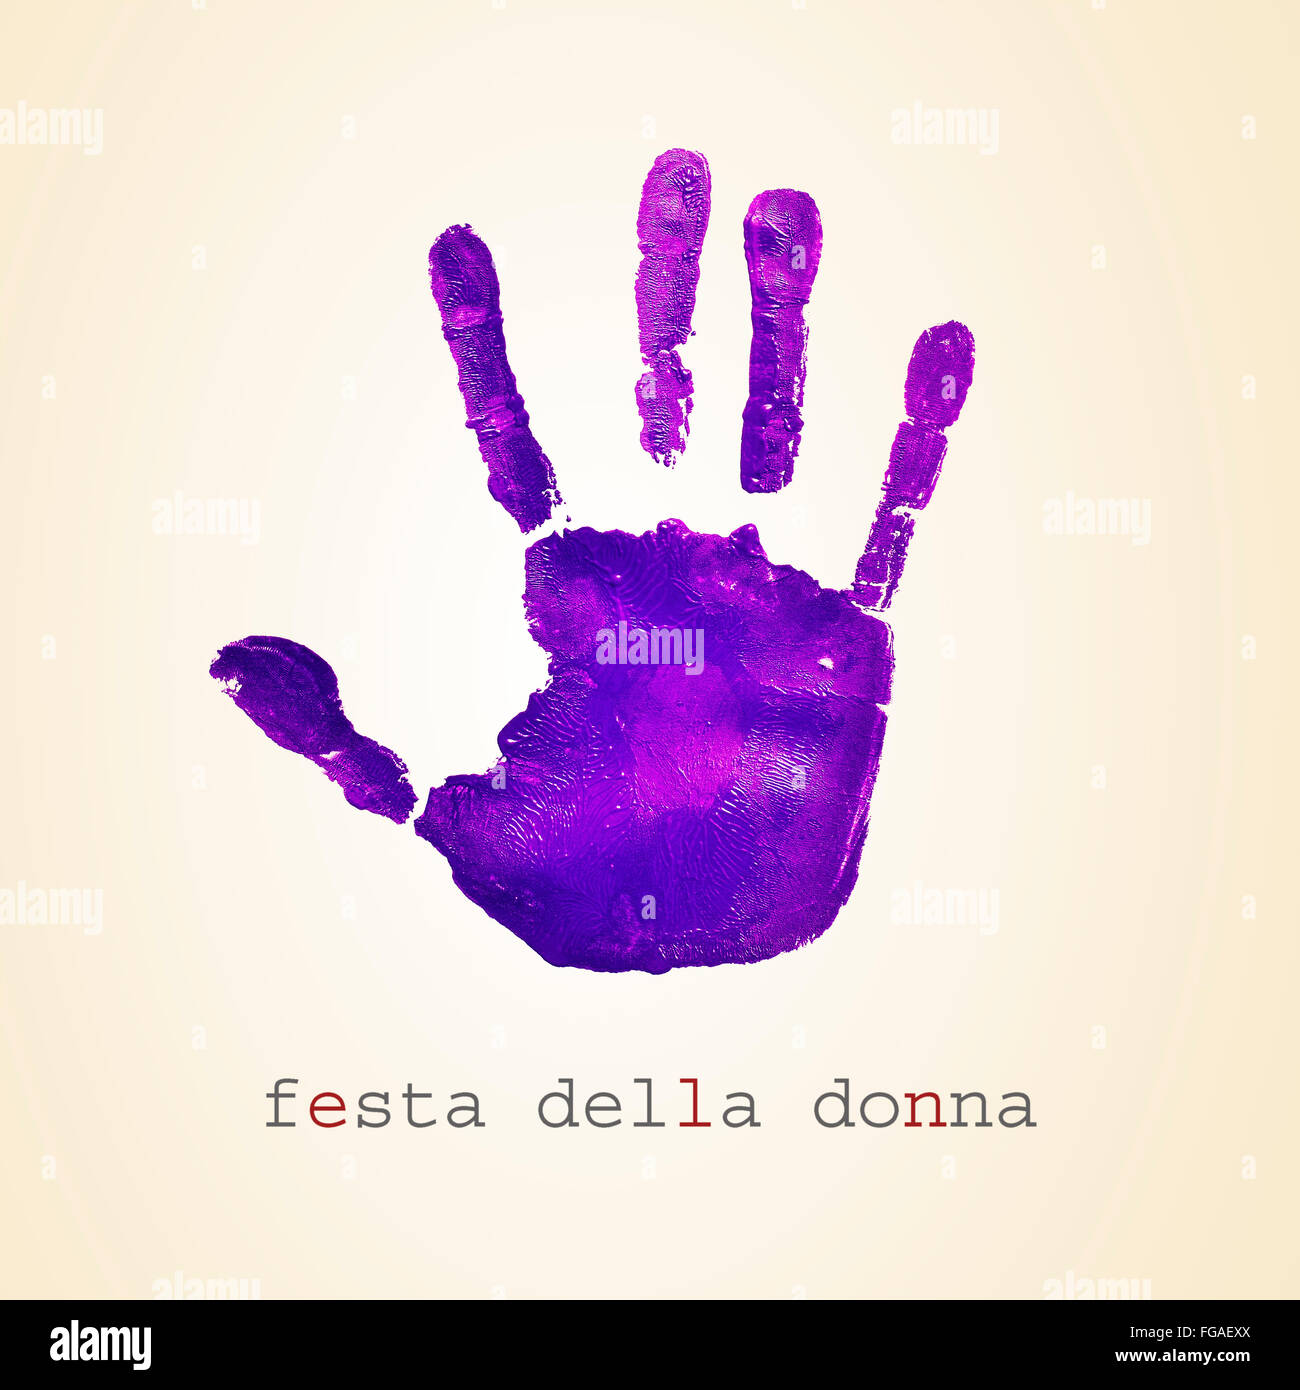 Un handprint viola e il testo festa della donna, womens giorno in italiano, su un sfondo beige Foto Stock